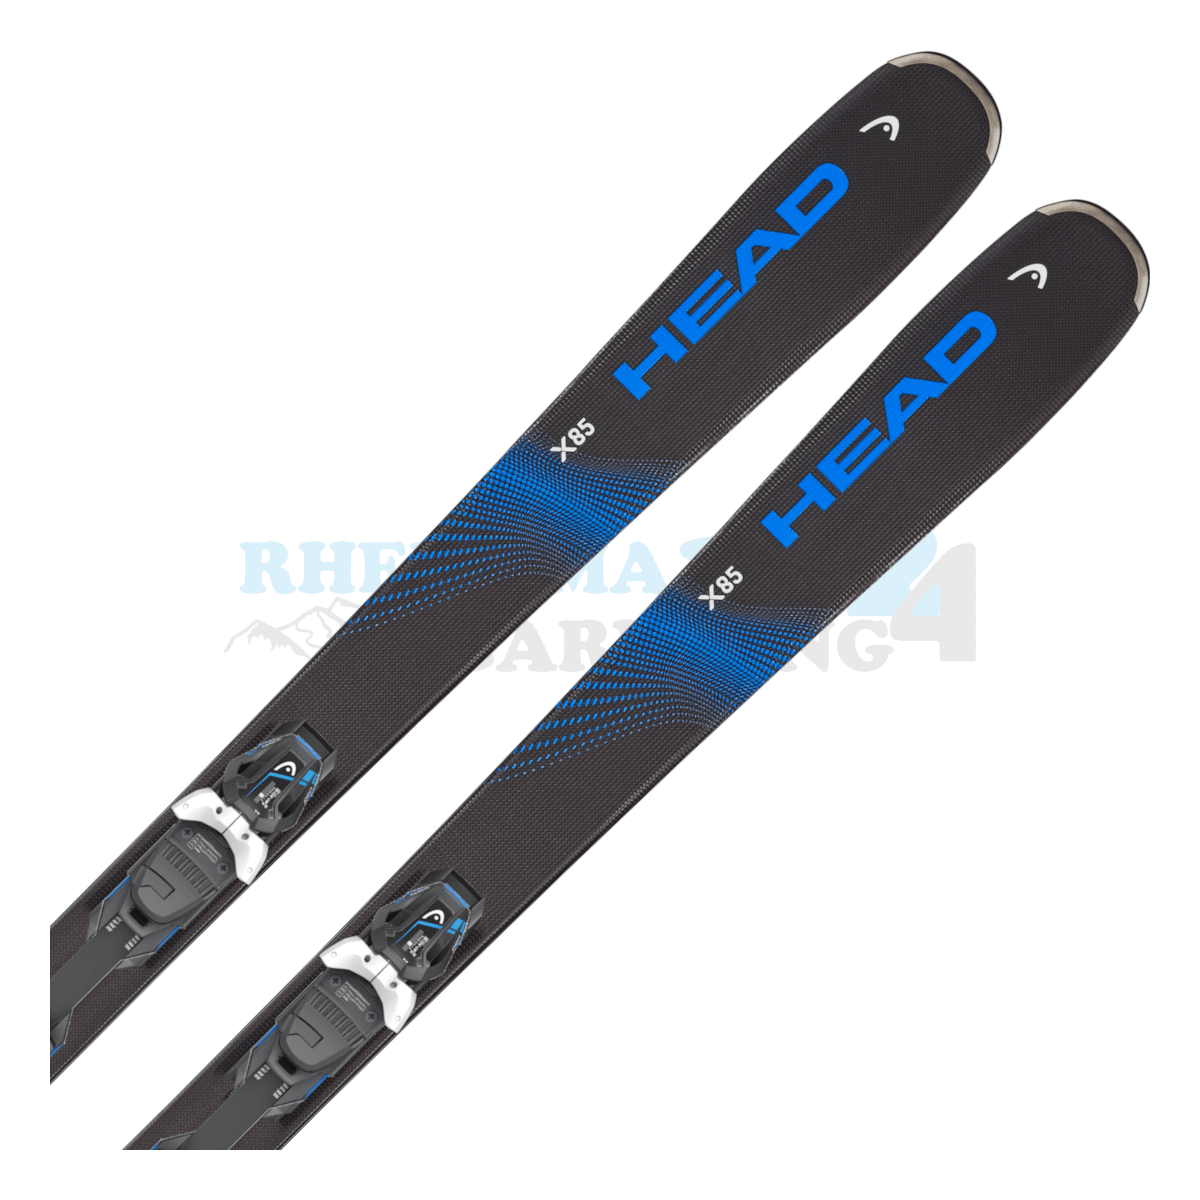 Head Kore X mit Platte sowie Bindung, der Ski ist in der Farbe schwarz-blau, die Ansicht des oberen Teils des Skis